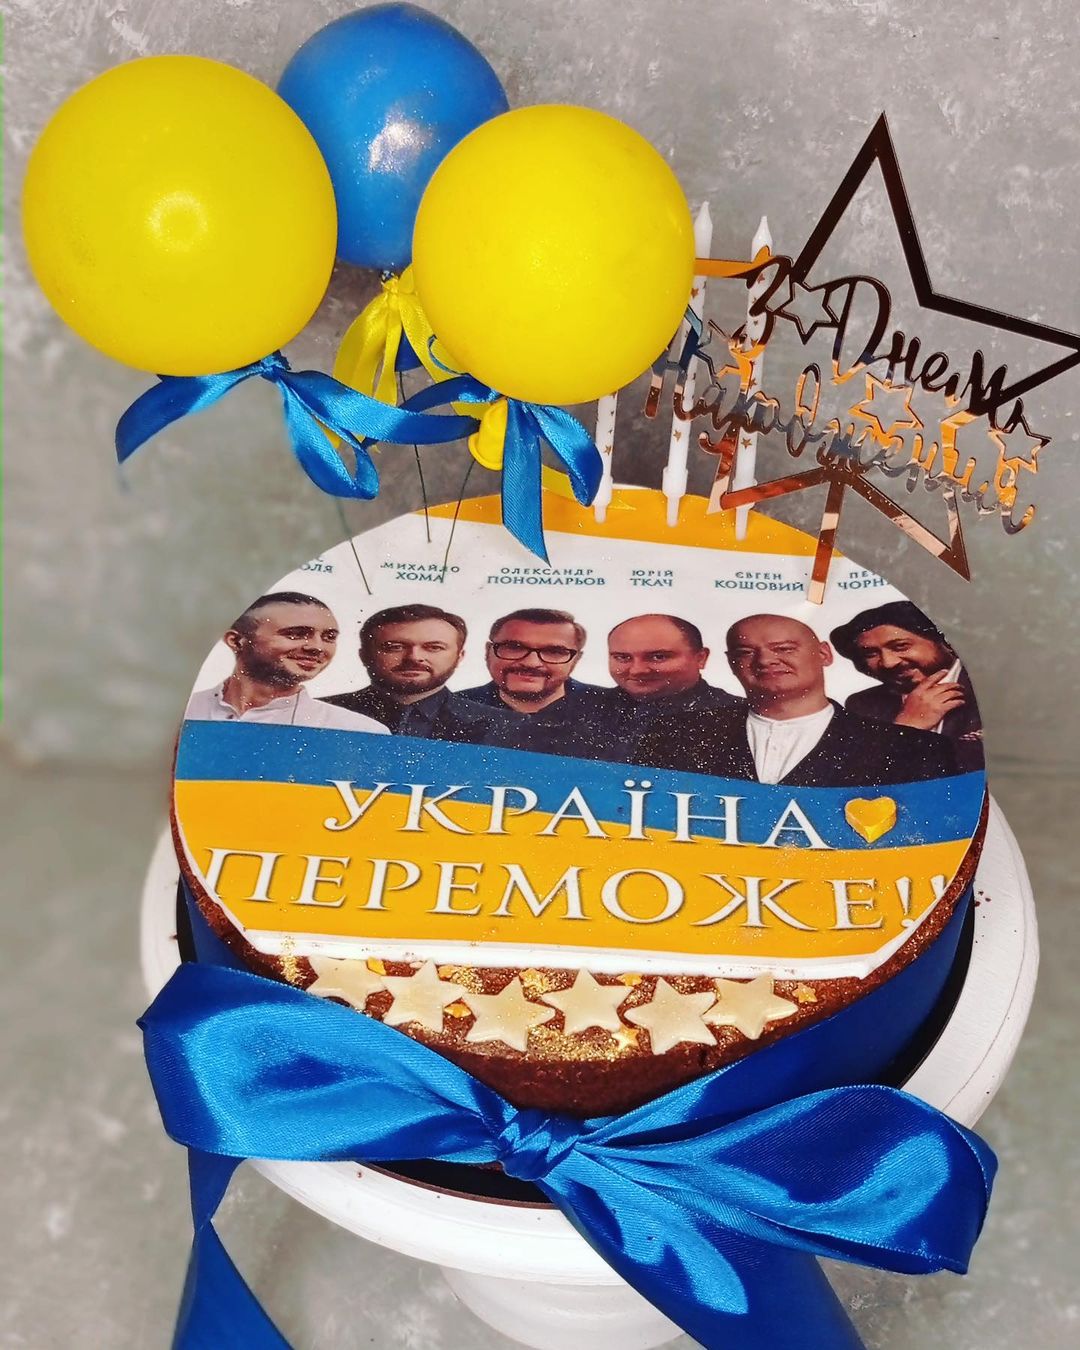 Патриотический торт и нежные поздравления дочери: как Александр Пономарев отпраздновал день рождения